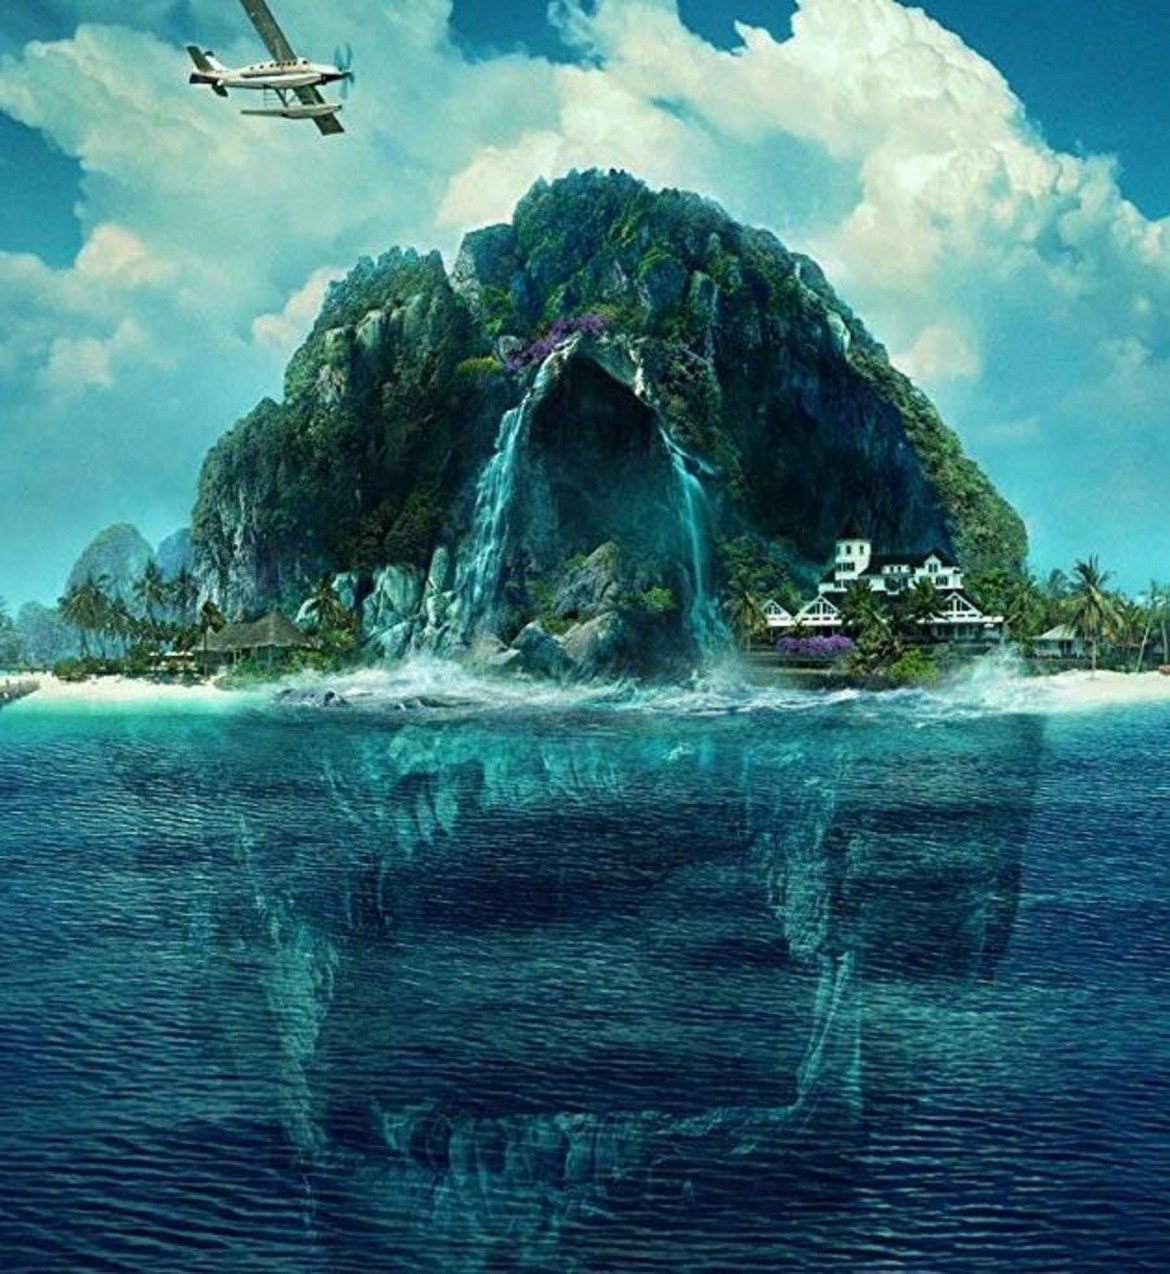 "Островът на фантазиите" (Fantasy Island)
Премиера: 14 февруари

Още нещо за почитателите на хоръра. В центъра на историята е луксозен курорт на отдалечен тропически остров, чиито гости имат шанс да сбъднат тайните си мечти. Понякога обаче те се превръщат в кошмари и няма защо да се съмнявате, че в случая ще стане точно така, а гостите ще трябва да намерят начин да разгадаят тайните на острова, за да се измъкнат живи.